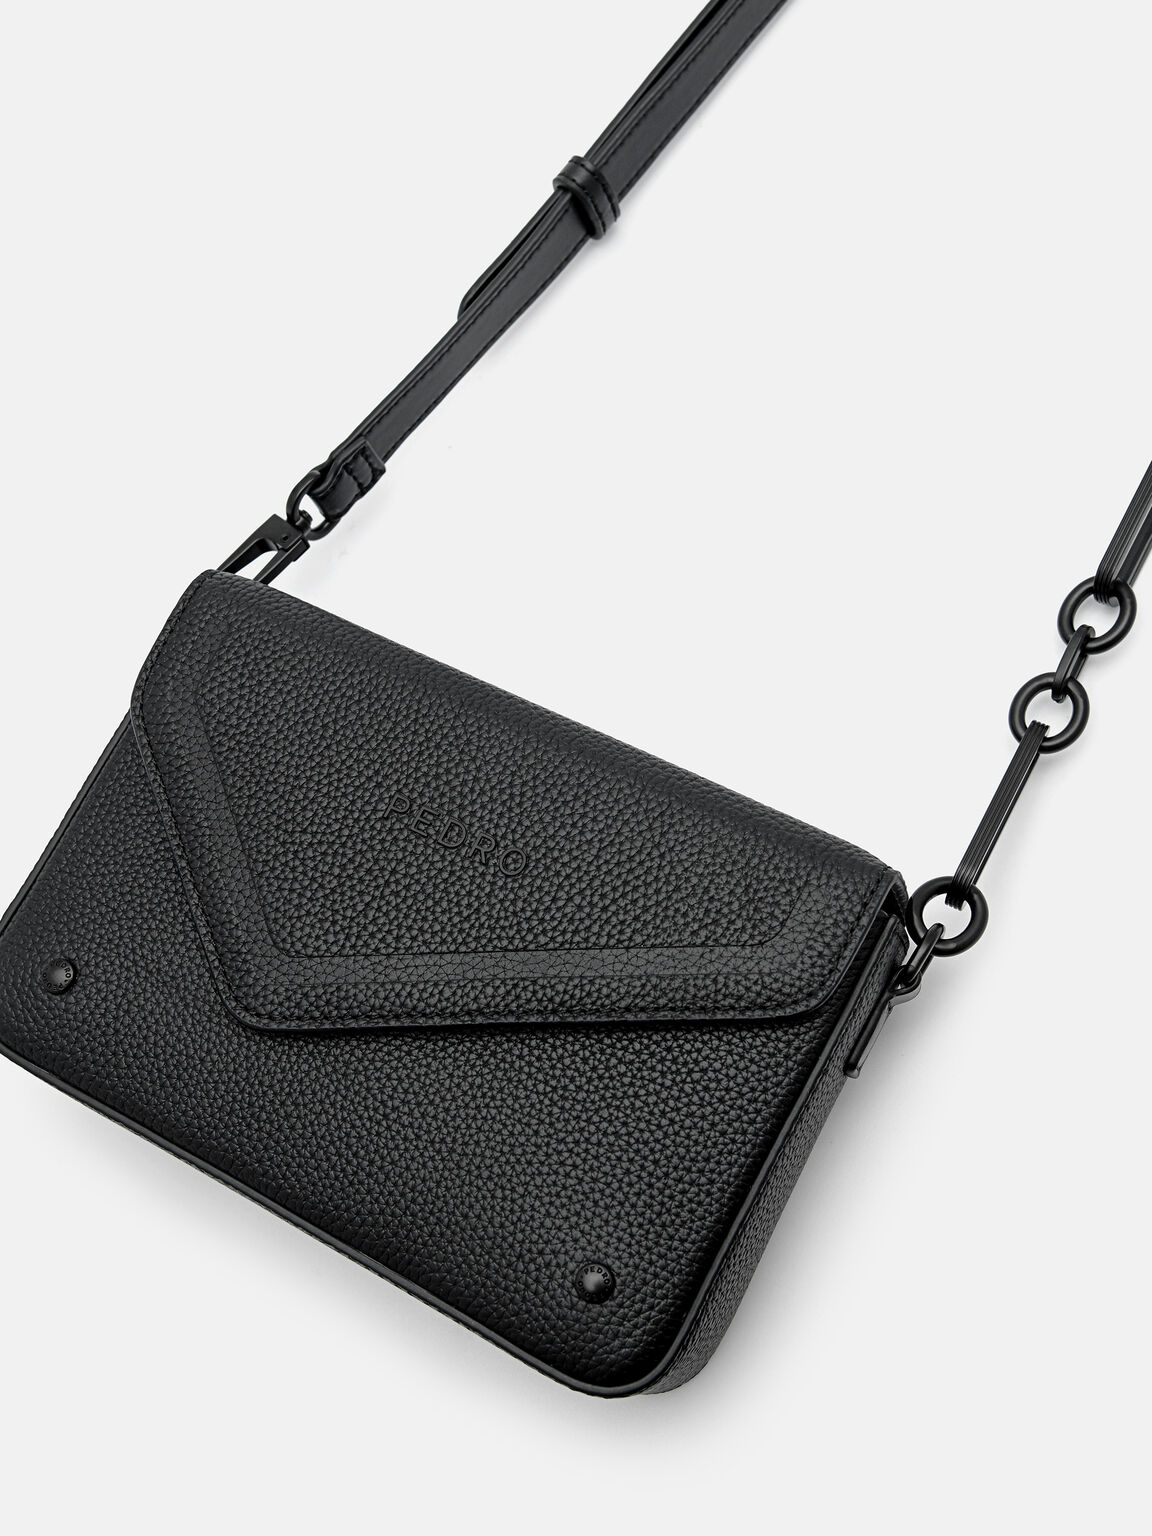 Taper Leather Boxy Sling Bag, Black, hi-res